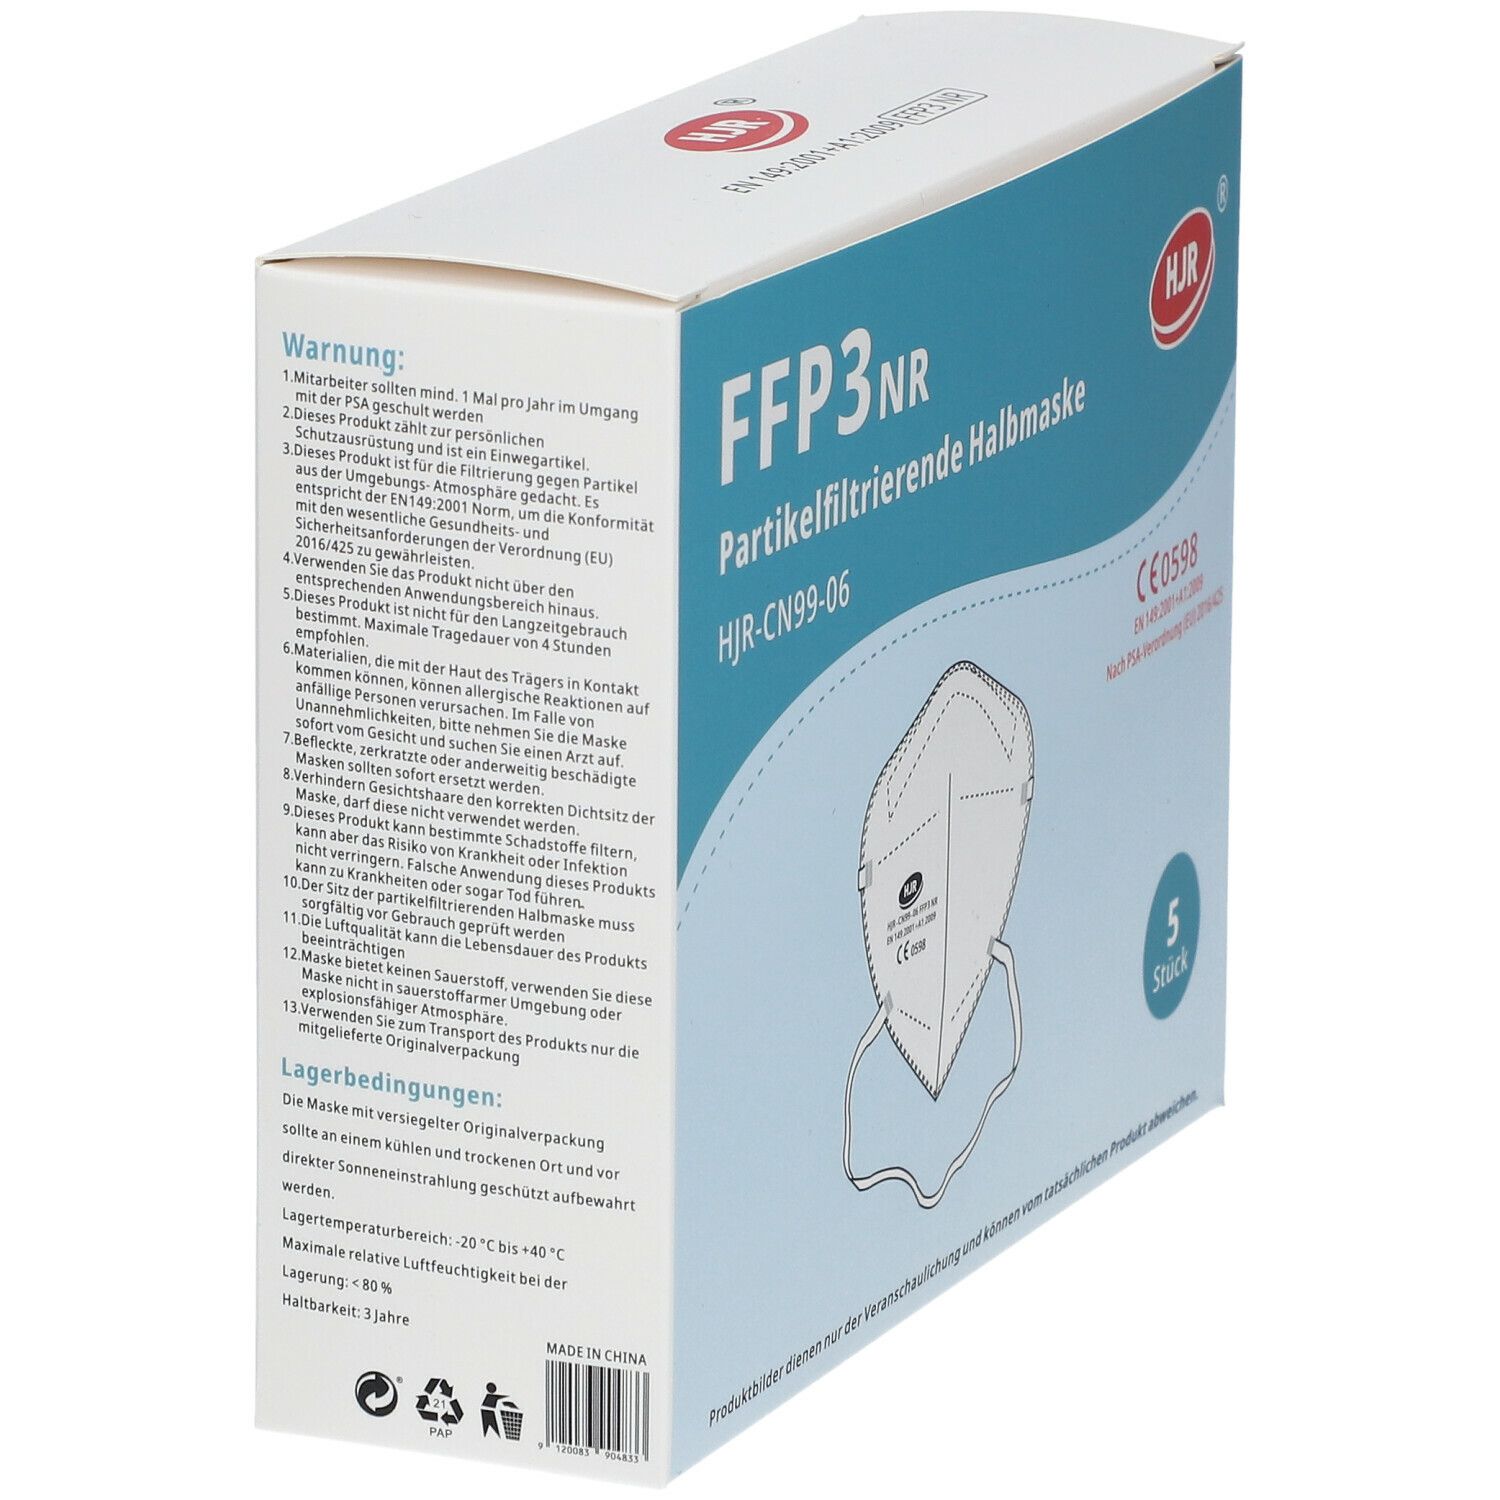 FFP3 Partikelfilternde Halbmaske 5er Set